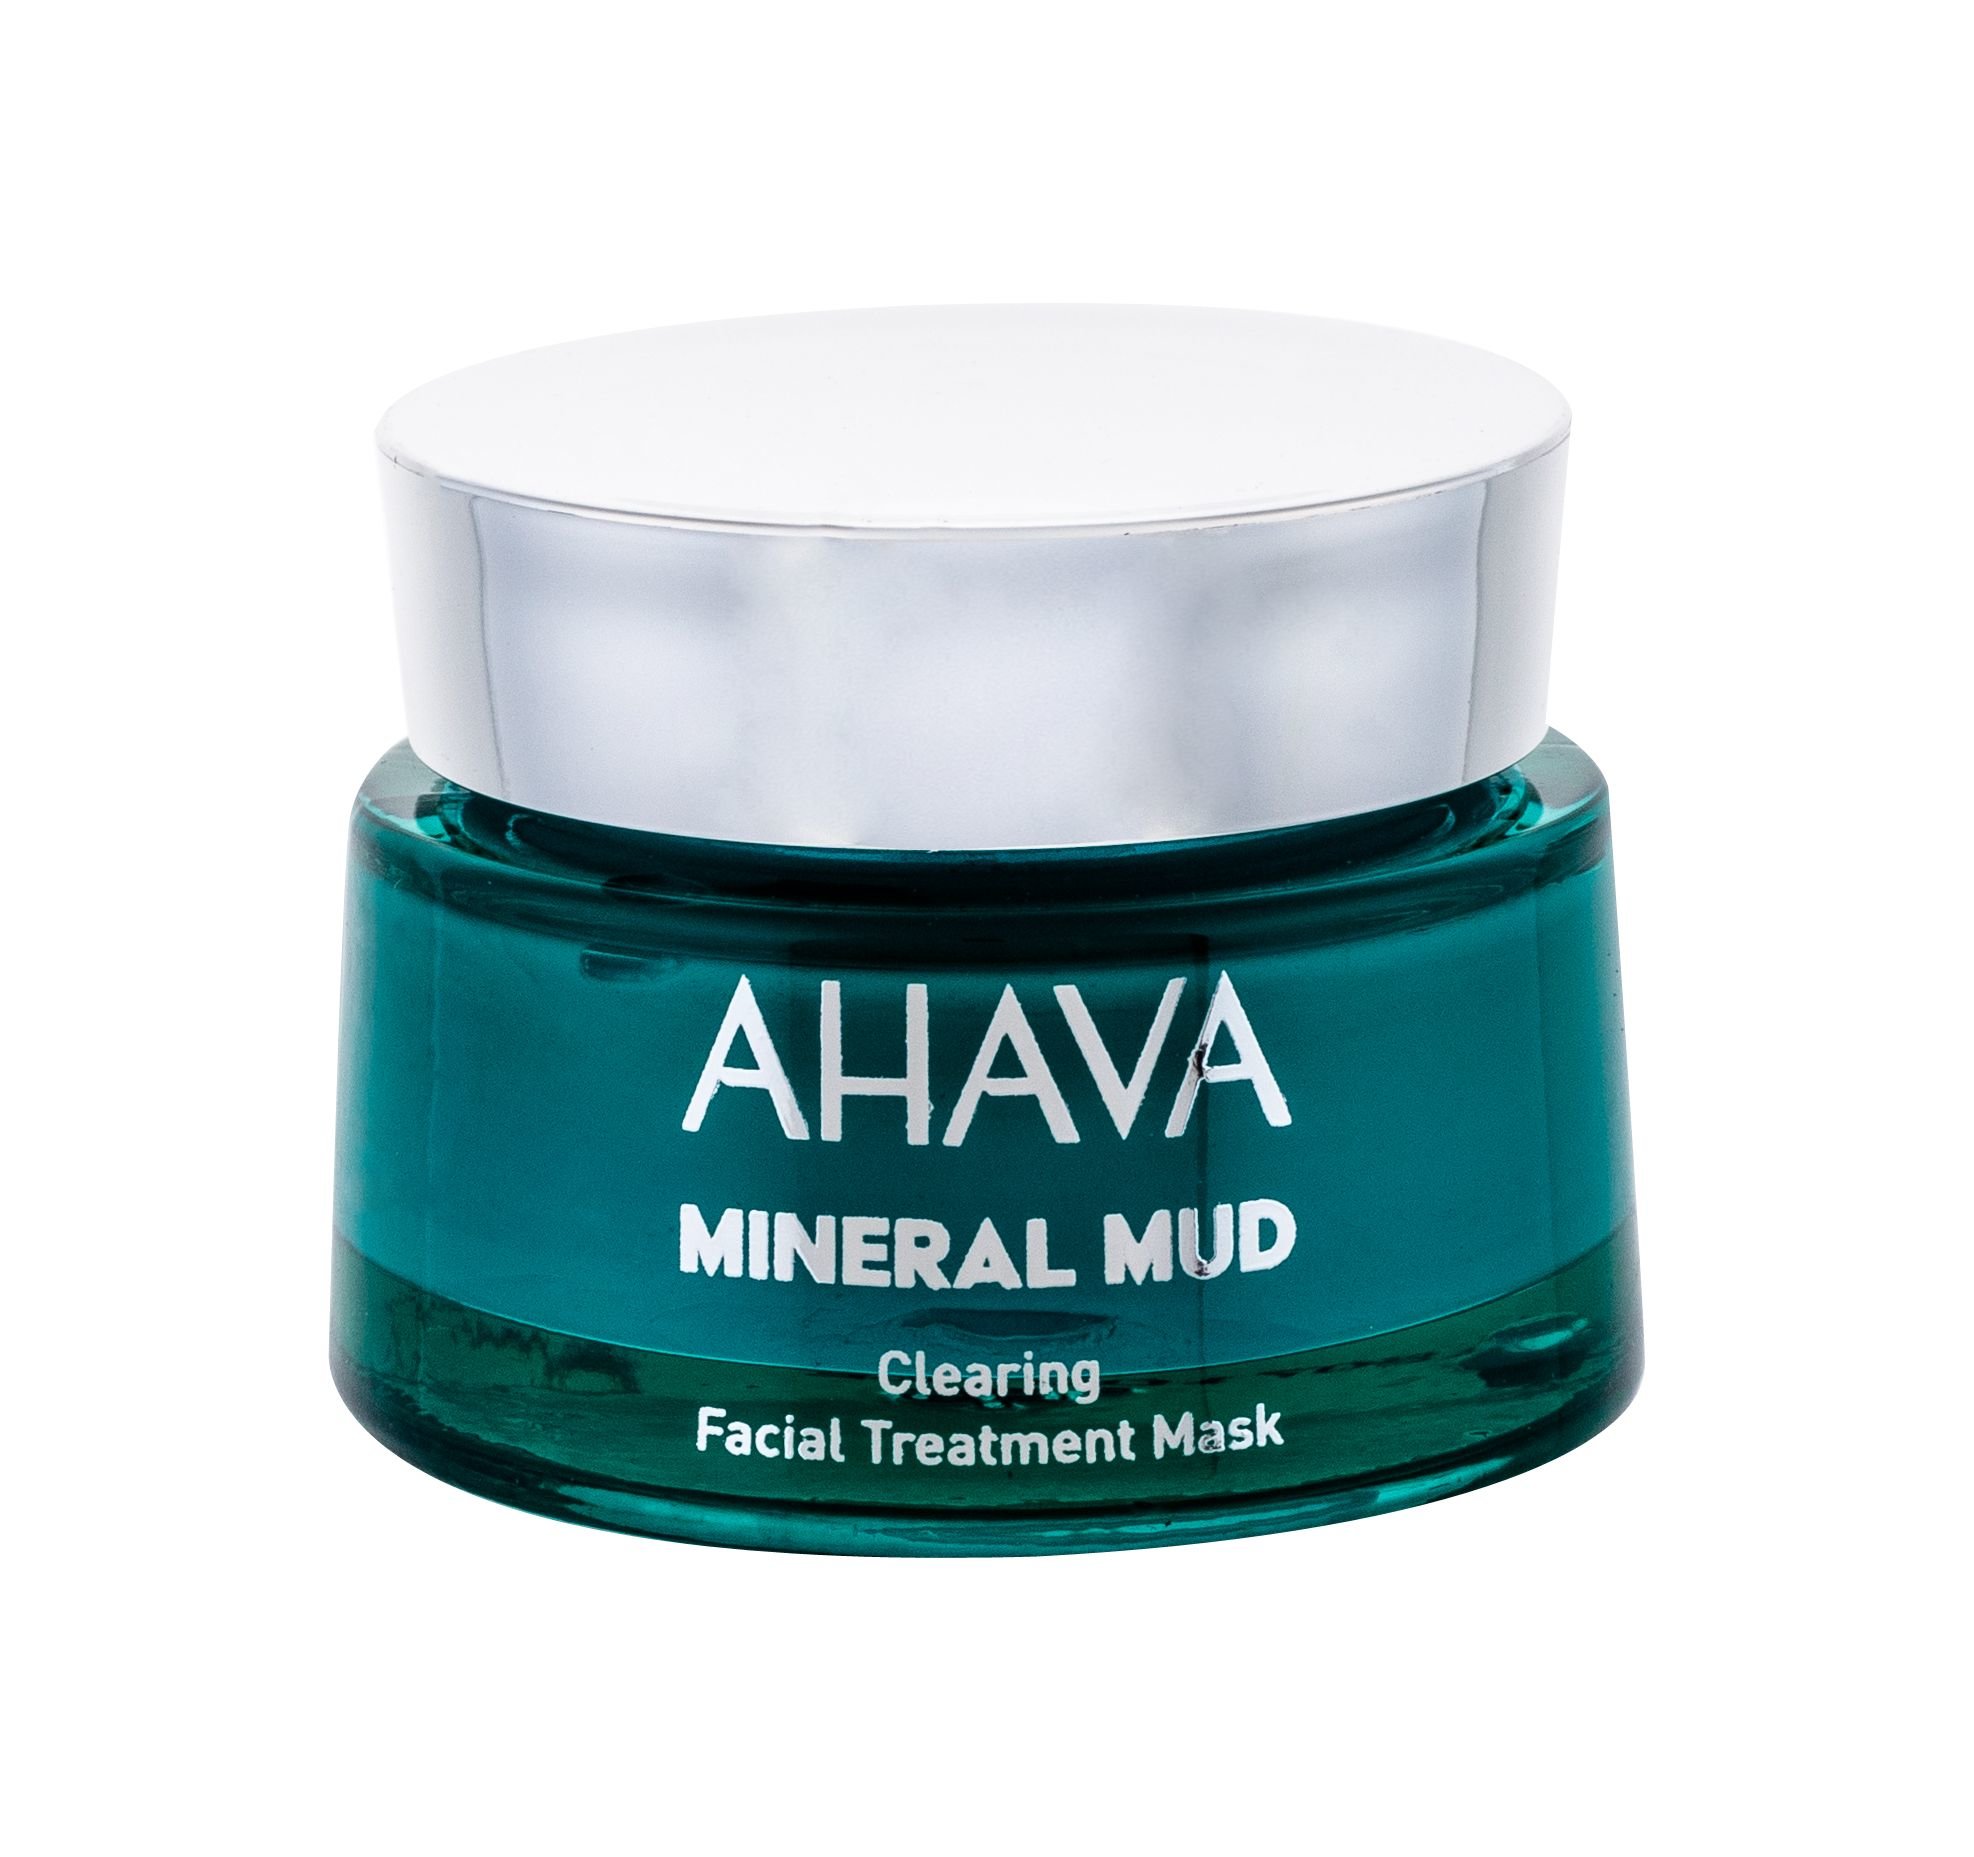 AHAVA Mineral Mud